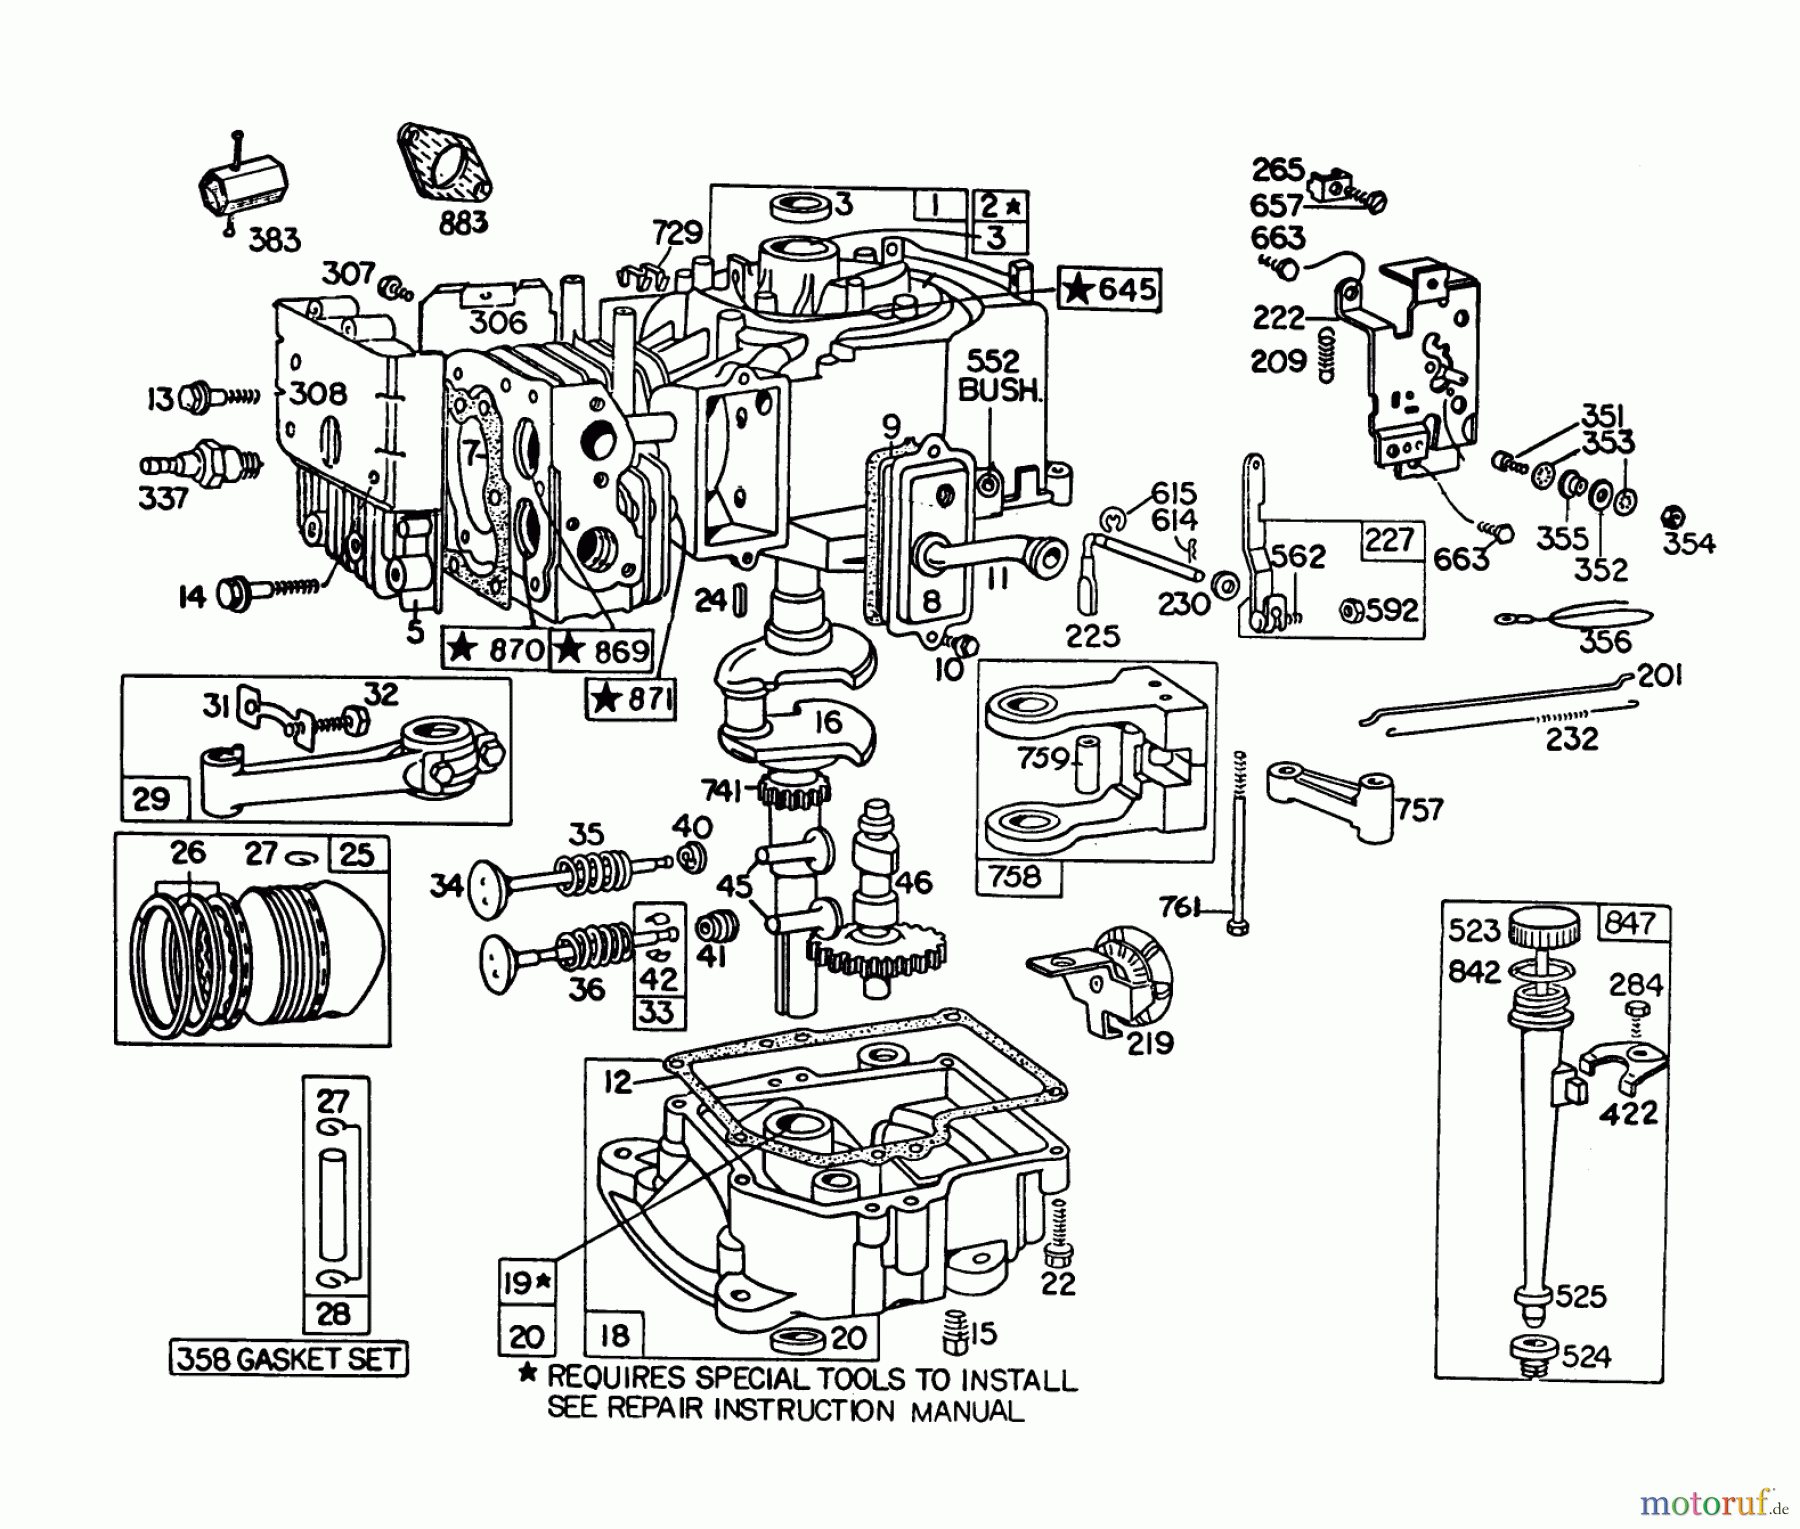  Toro Neu Mowers, Lawn & Garden Tractor Seite 1 57360 (11-32) - Toro 11-32 Lawn Tractor, 1982 (2000001-2999999) ENGINE BRIGGS & STRATTON MODEL 191707-5676-01 (MODEL 57300)